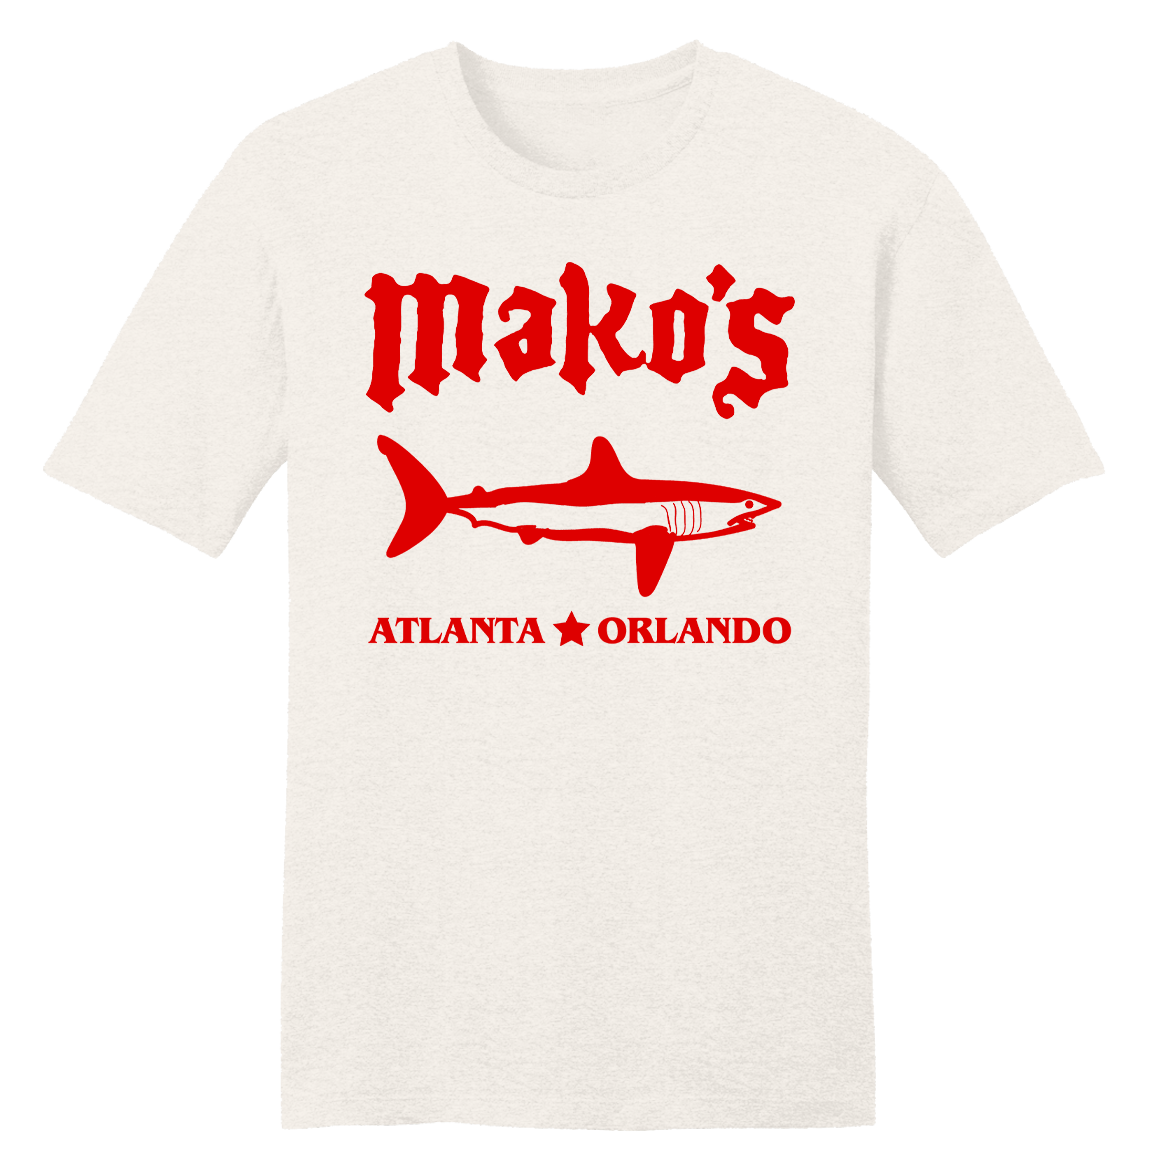 Mako's T-shirt